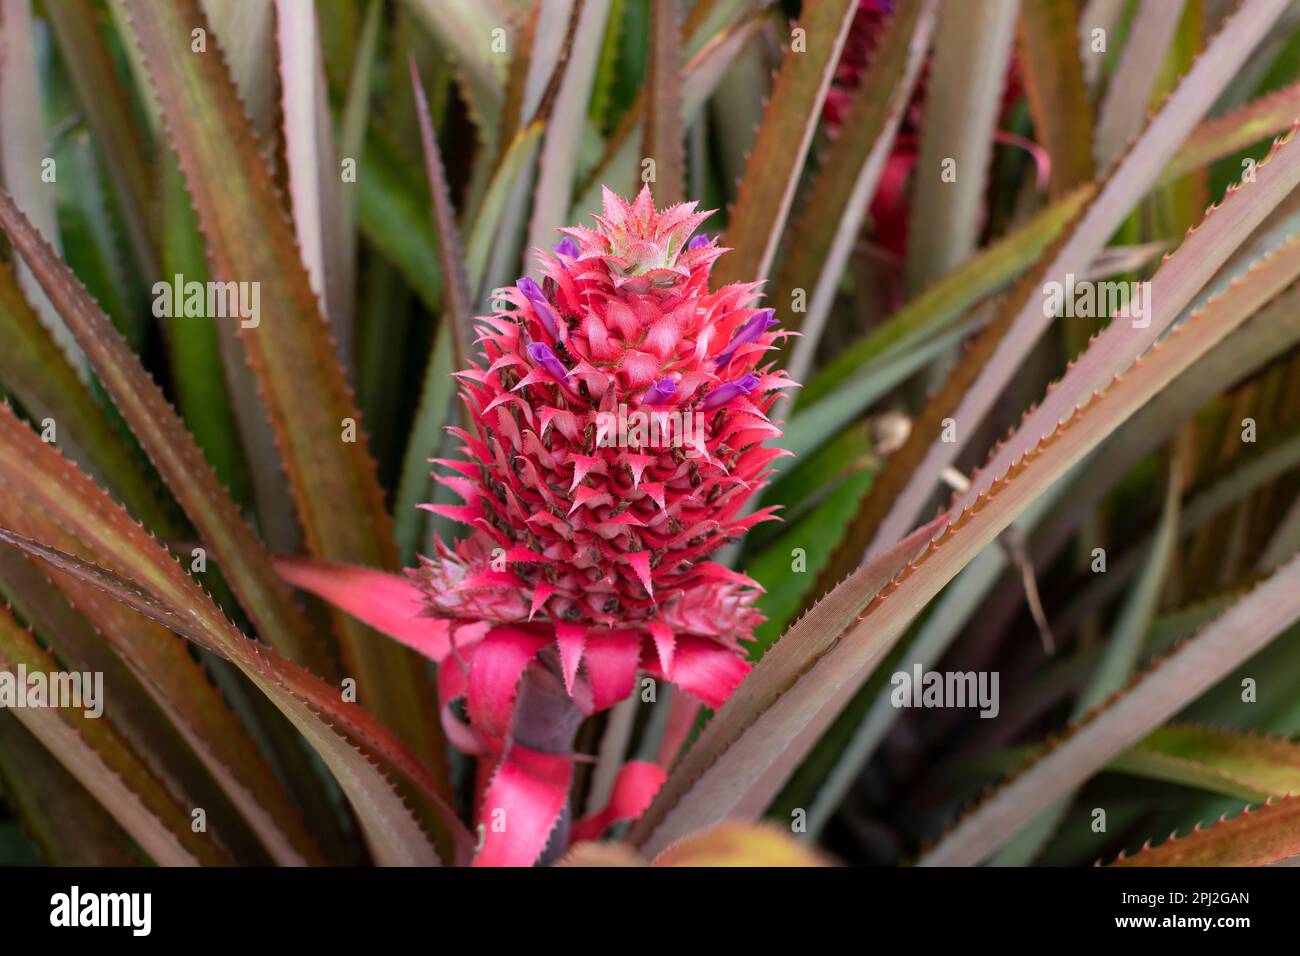 Zierpflanze aus rosa Ananas. Ananasblüte Aechmea fasciata (Silbervase, Urne) blüht aus nächster Nähe mit grünen Blättern im Naturhintergrund Stockfoto